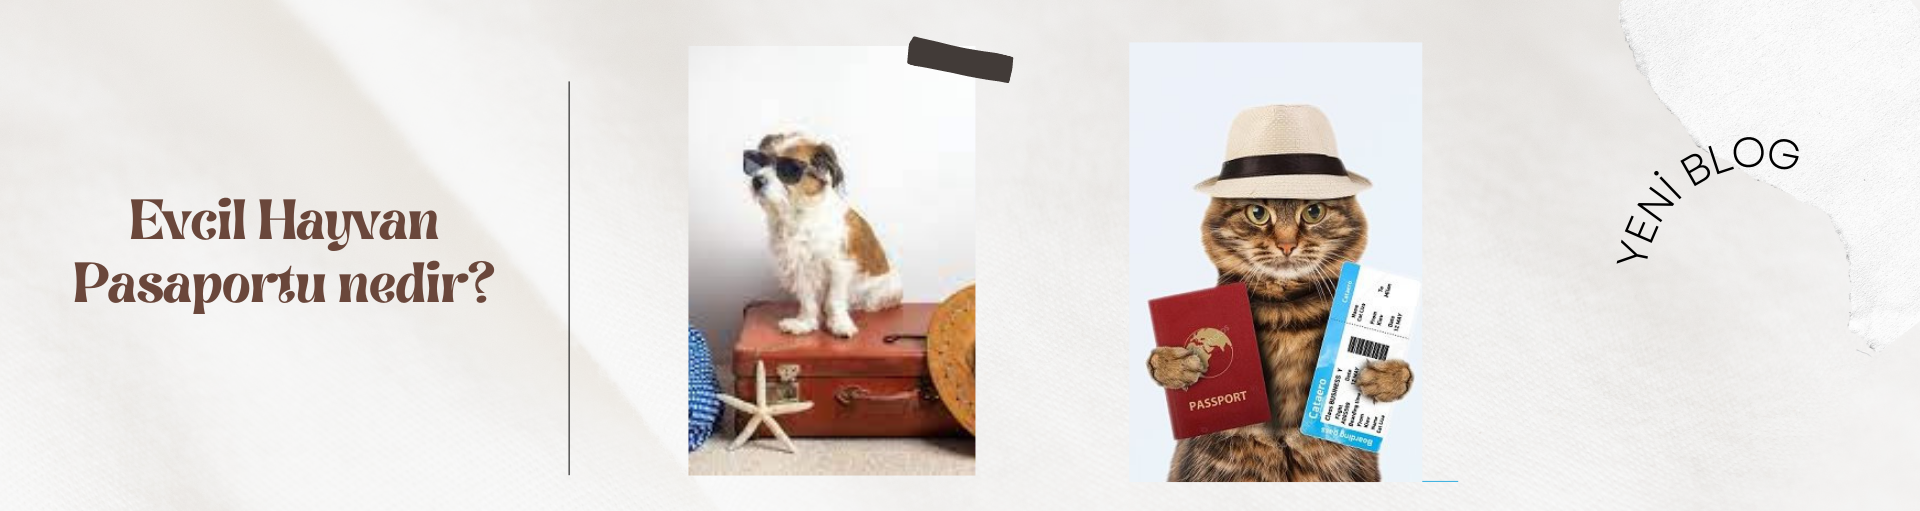 Evcil Hayvan Pasaportu: Dünyanın Dört Bir Yanındaki Patili Arkadaşların Seyahat Bileti